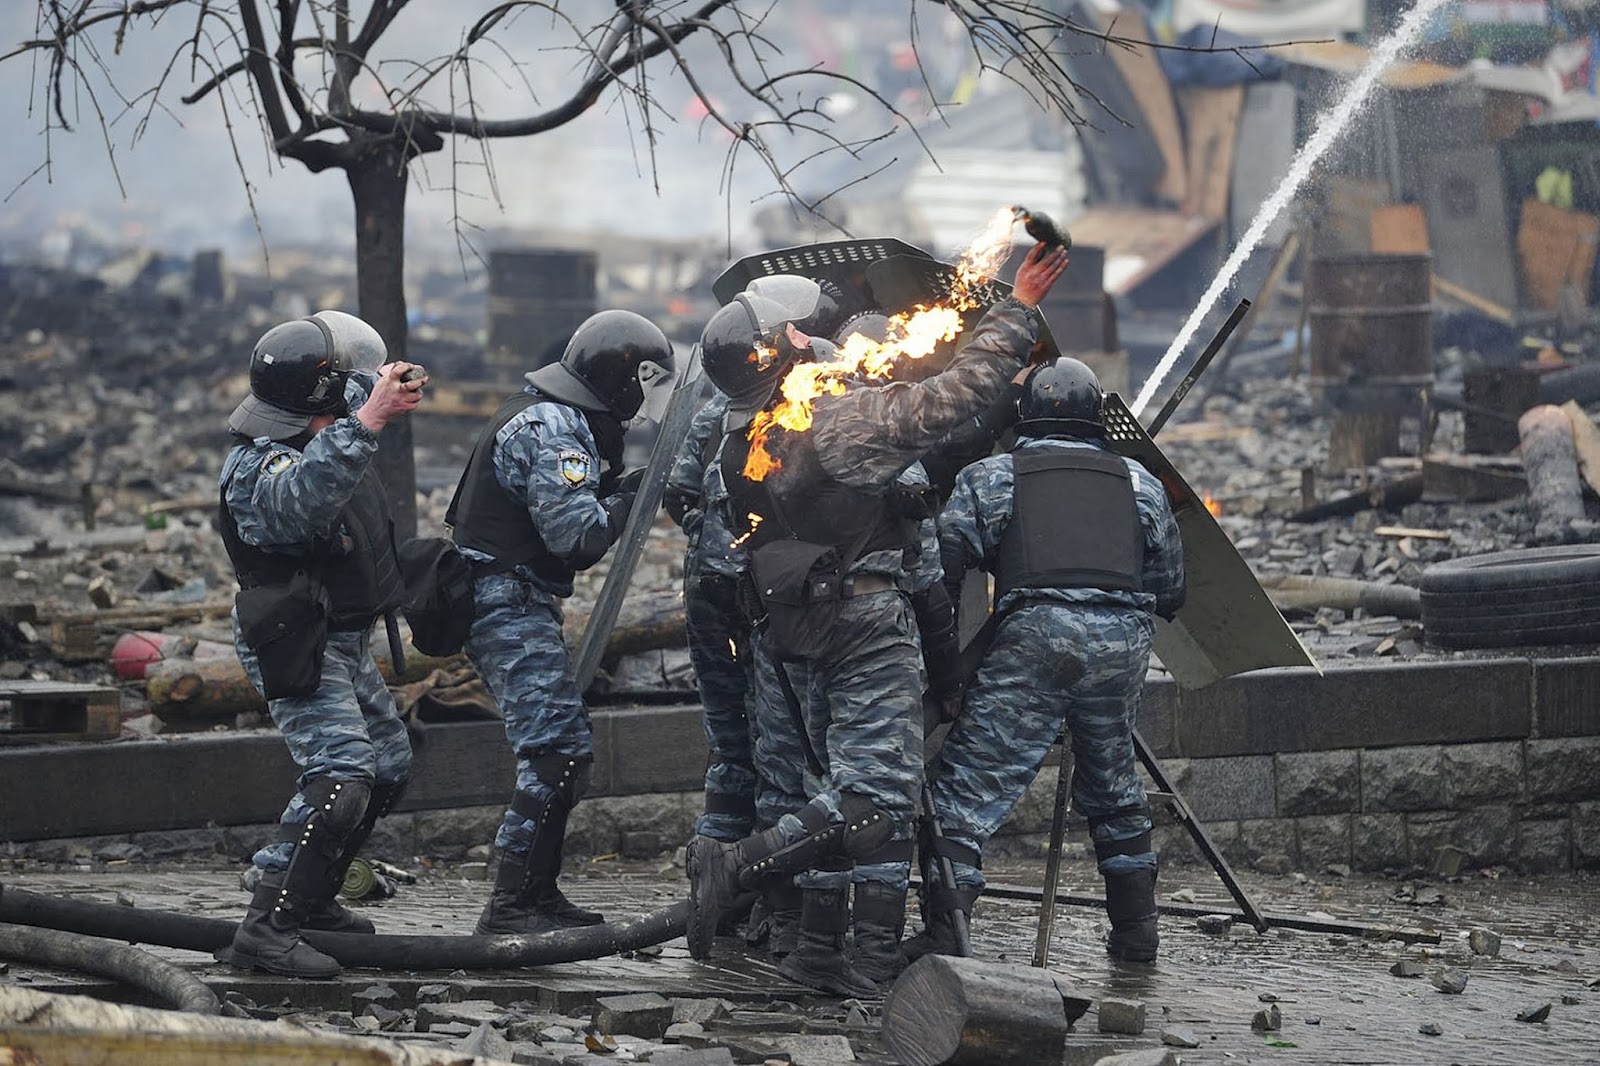 Что произошло на майдане в 2014. Беркут Украина Майдан на Украине в 2014. Майдан на Украине в 2014 Беркут.